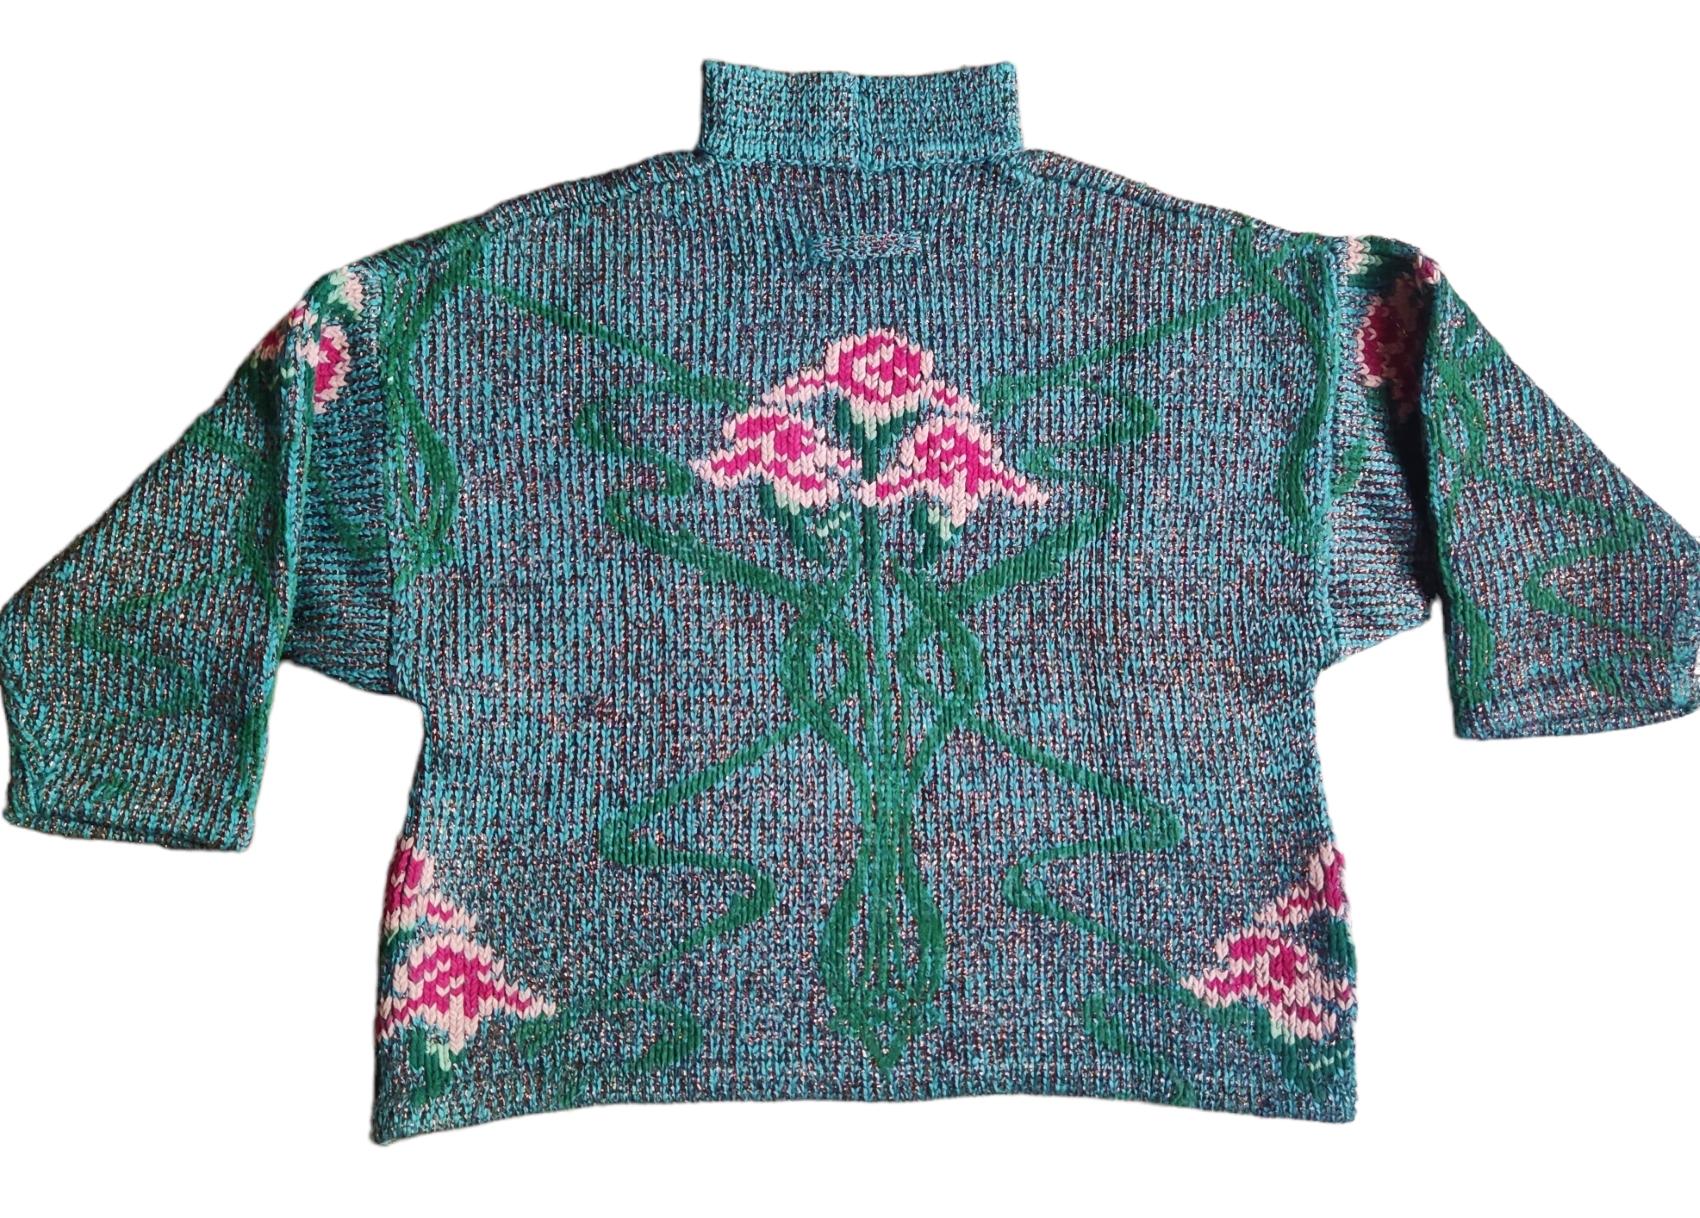 Pull en lurex de Jean Paul Gaultier de la collection automne-hiver 1984 !
Ce pull est composé de fleurs roses tricotées en fil chenille et de lurex cuivré qui lui donne un éclat subtil, conférant une touche glam des années 80 aux visuels